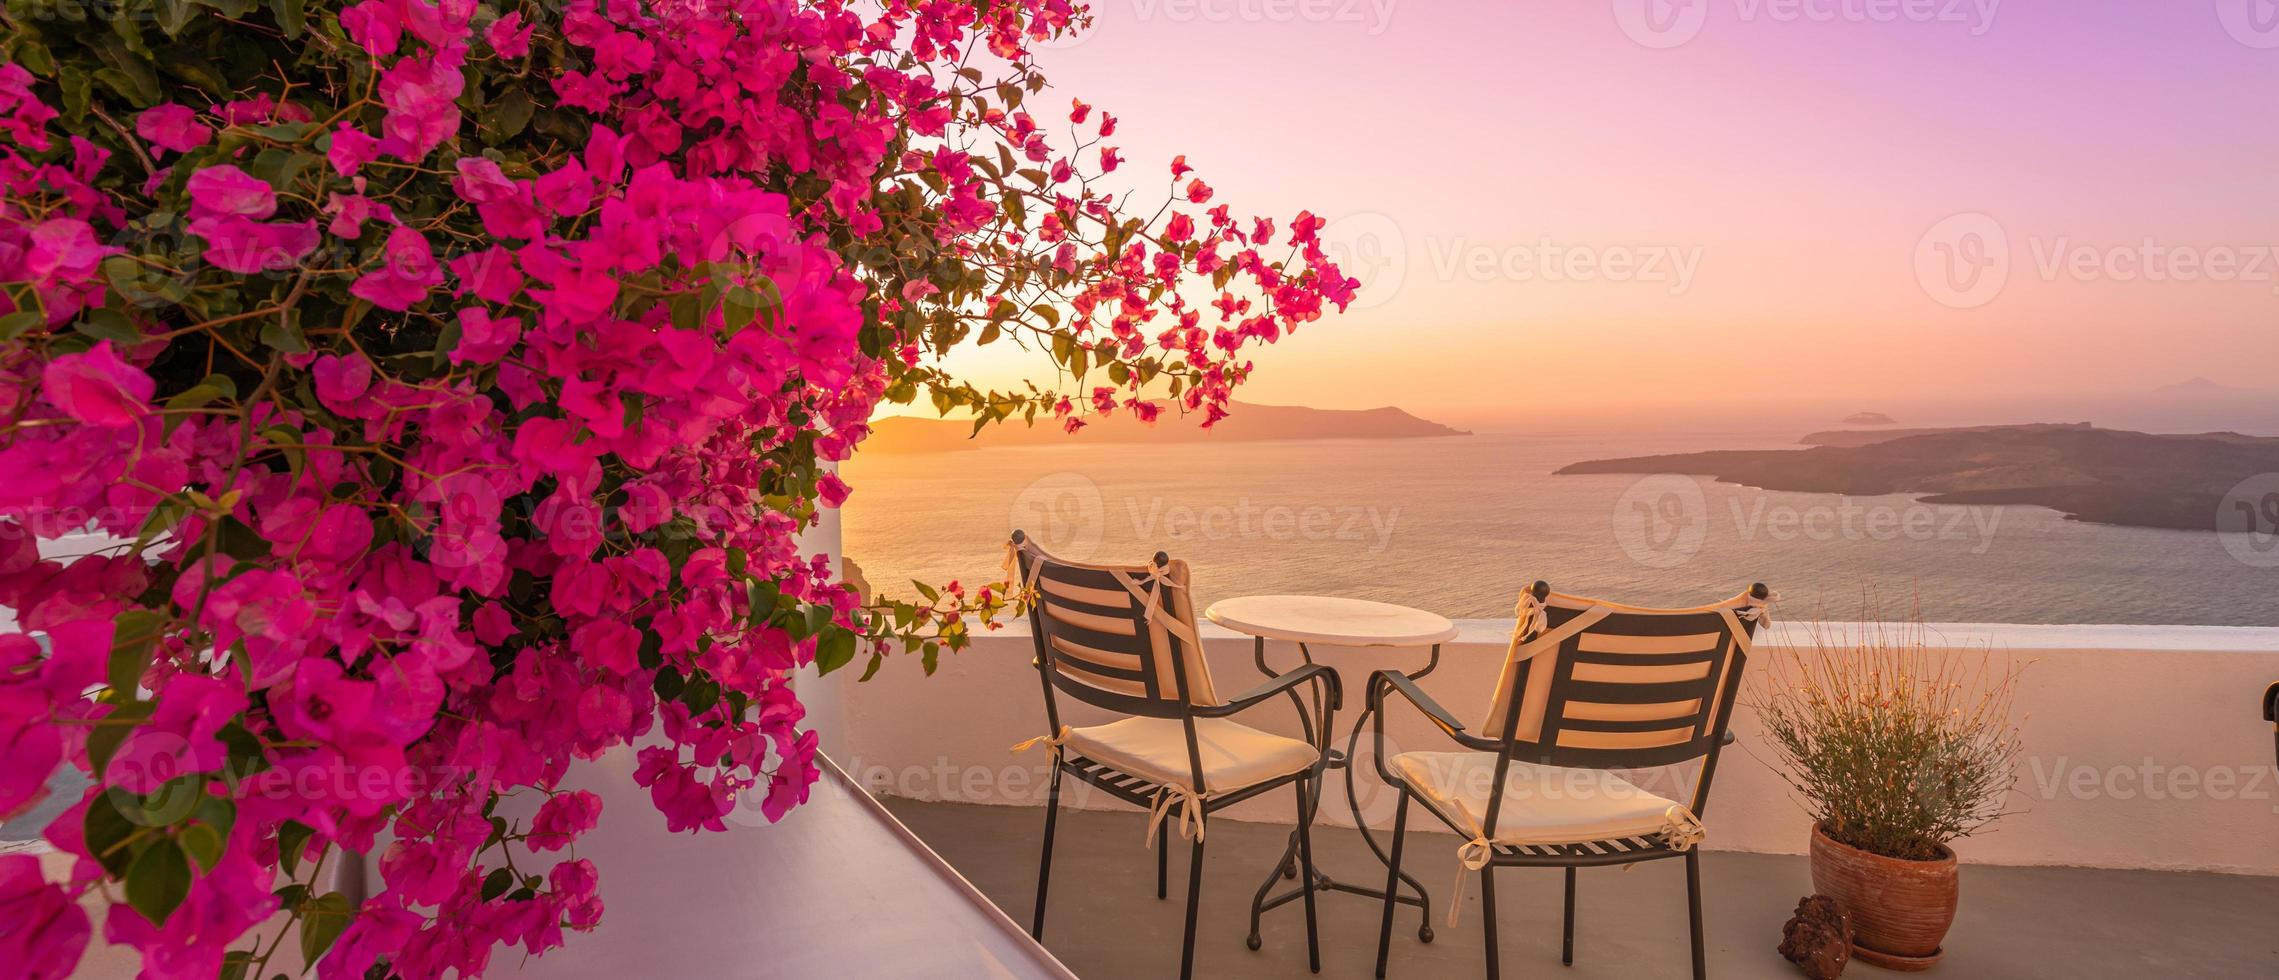 prachtig uitzicht op de caldera en genieten van romantische landschappen zonsondergang Egeïsche zee, santorini. paar reisvakantie, huwelijksreisbestemming. romantiek met bloemen, twee stoelen tafel en uitzicht op zee. luxe vakantie foto